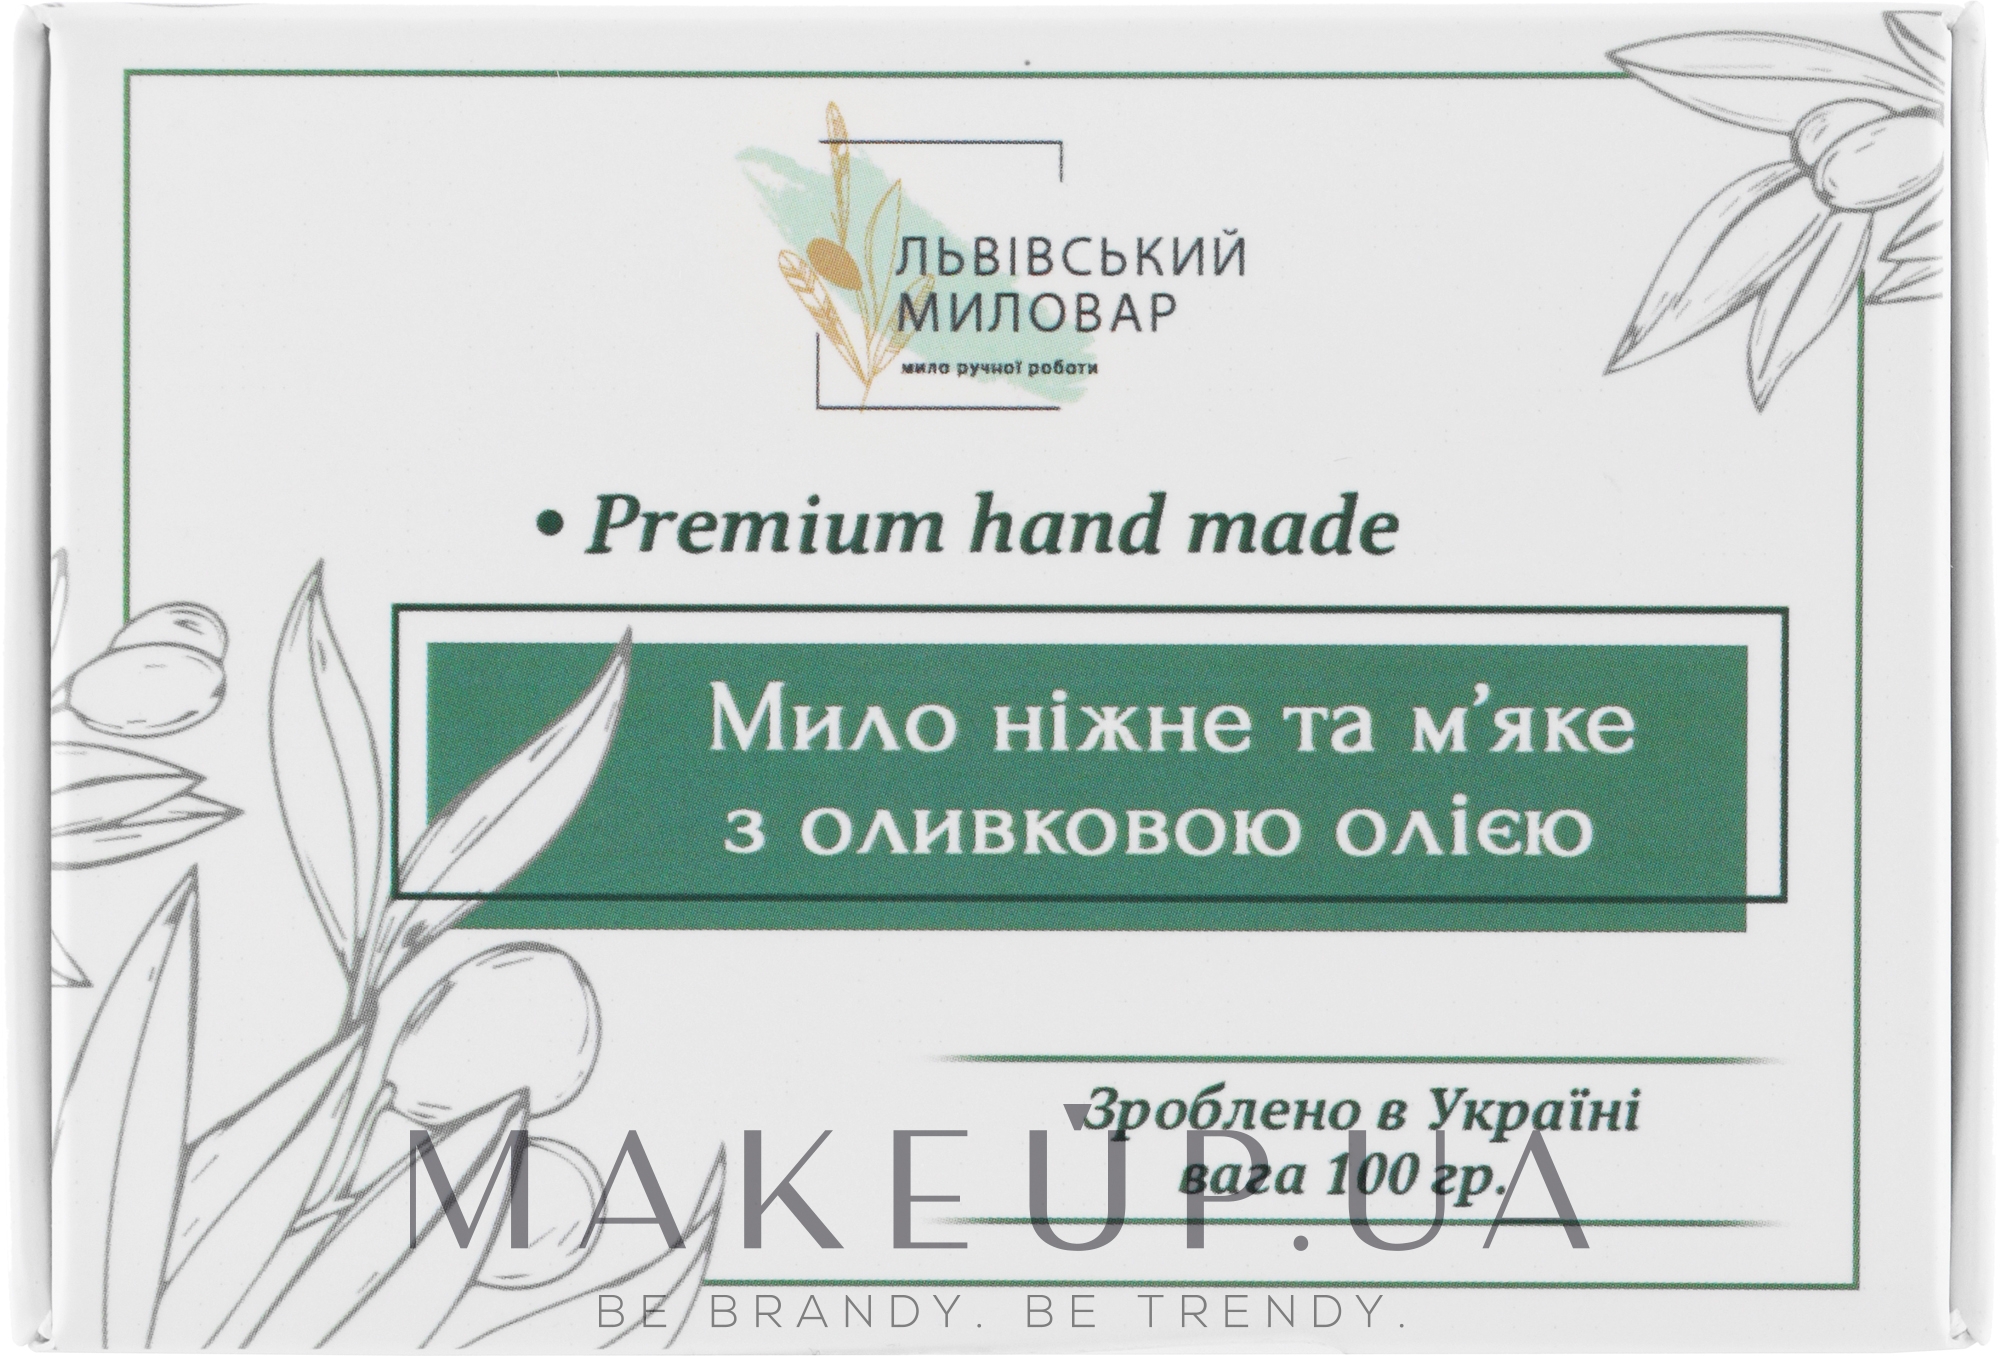 Мыло ручной работы оливковое - Львовский мыловар — фото 100g